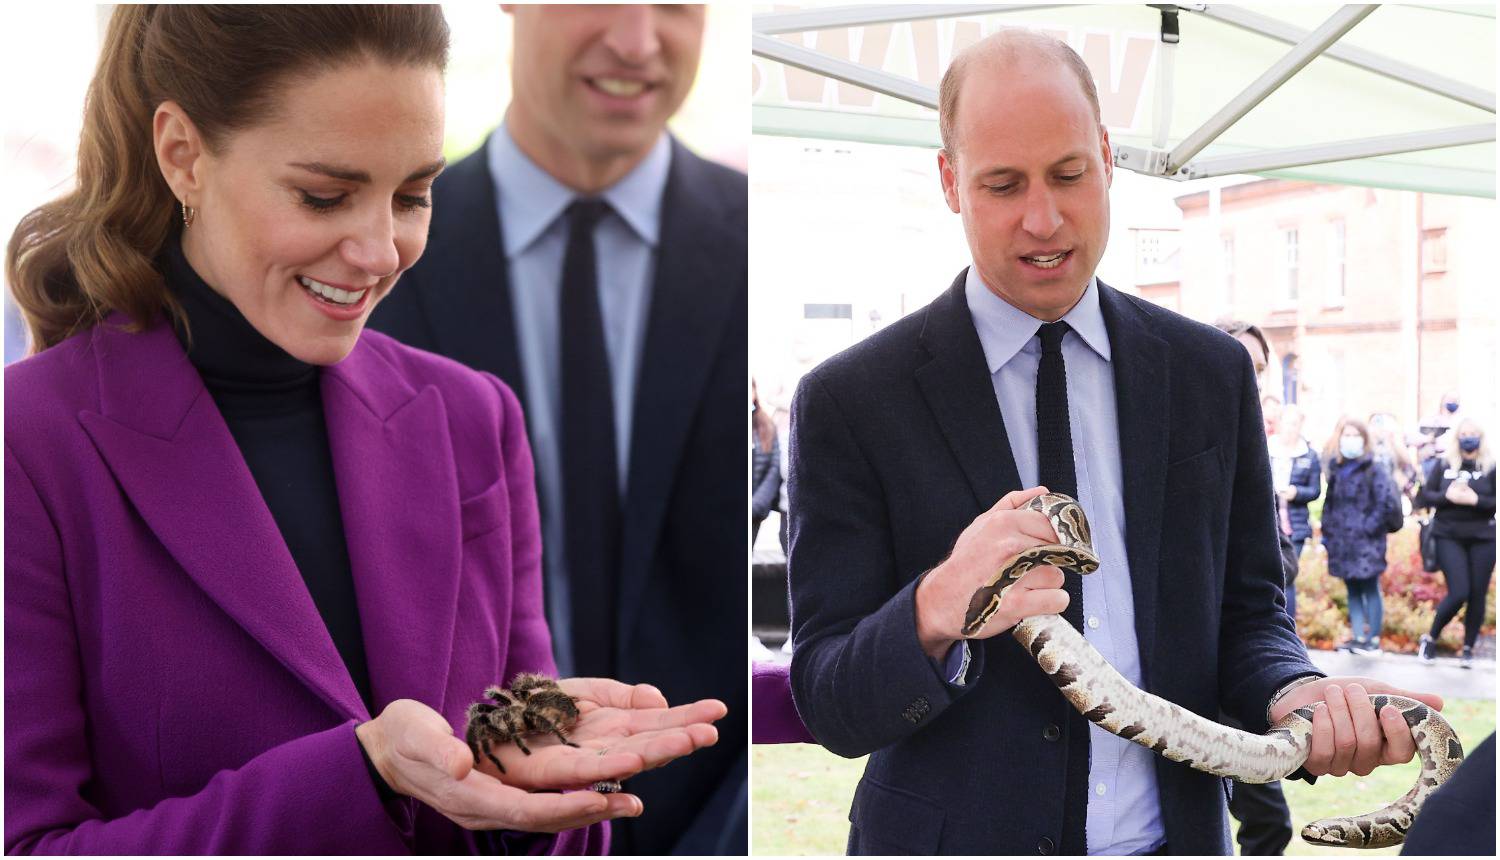 Kate držala tarantulu u ruci, a William hrabro mazio pitona